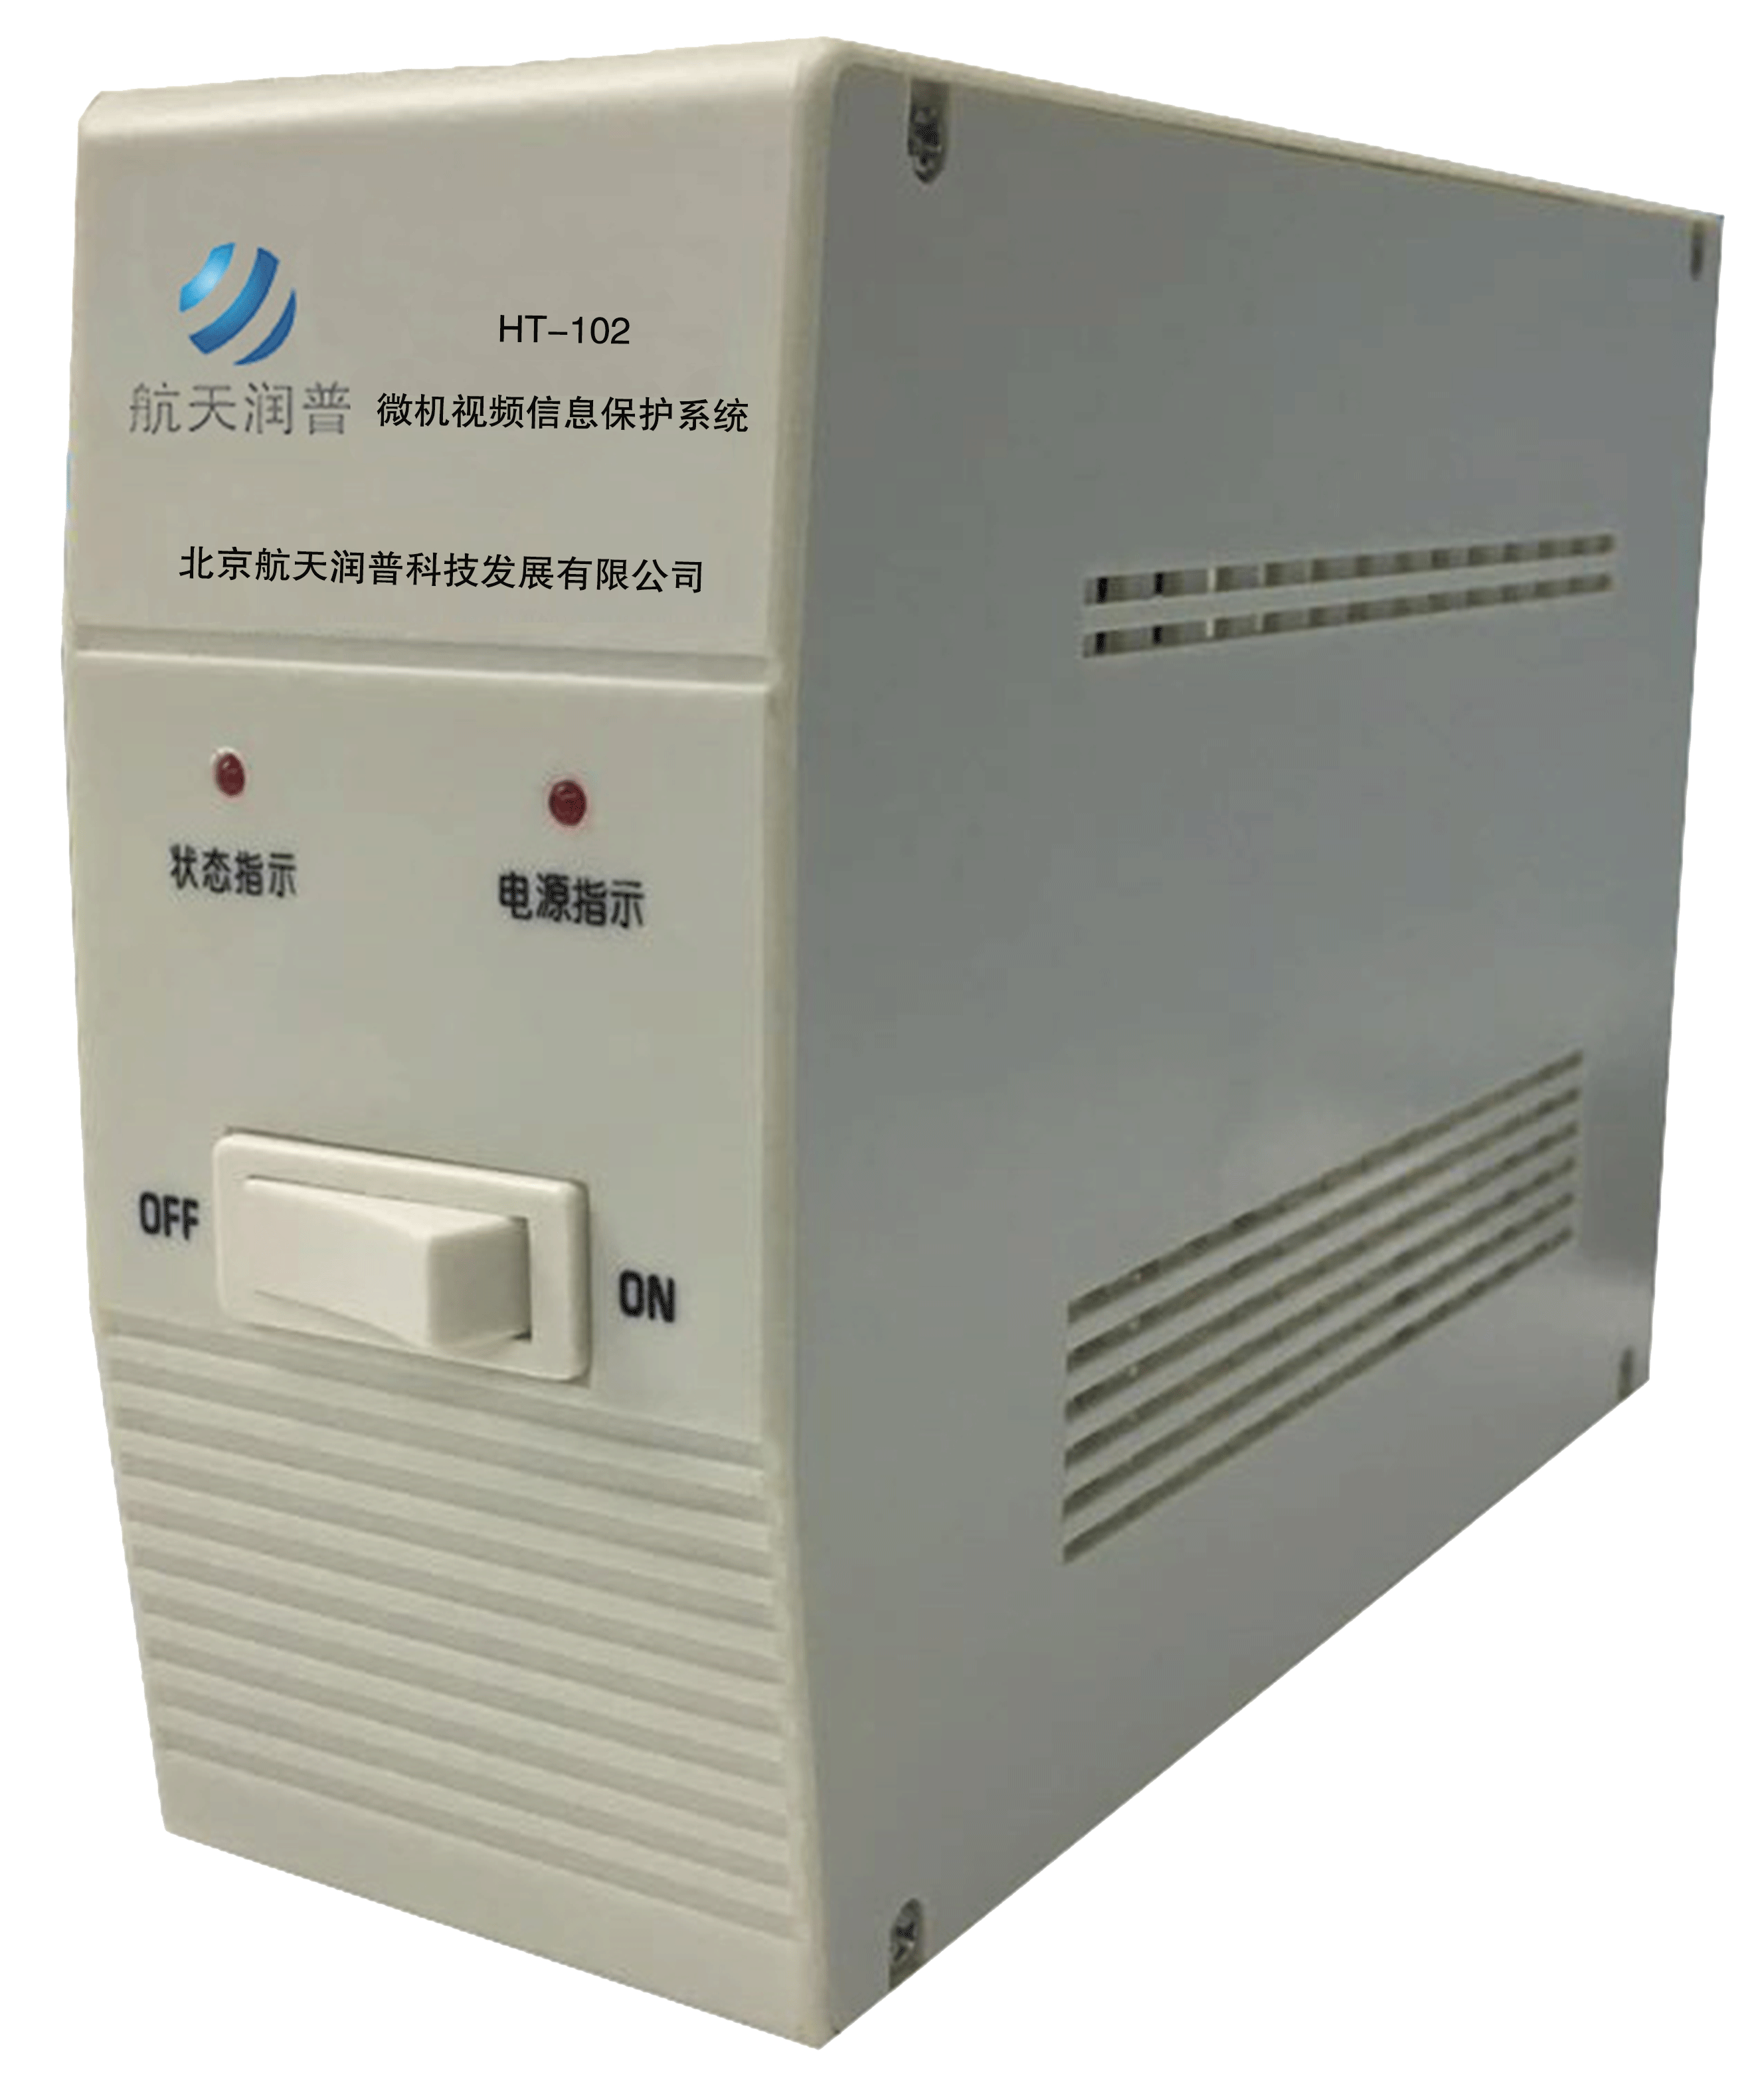 航天润普微机视频信息保护系统HT-102B型（国密一级）